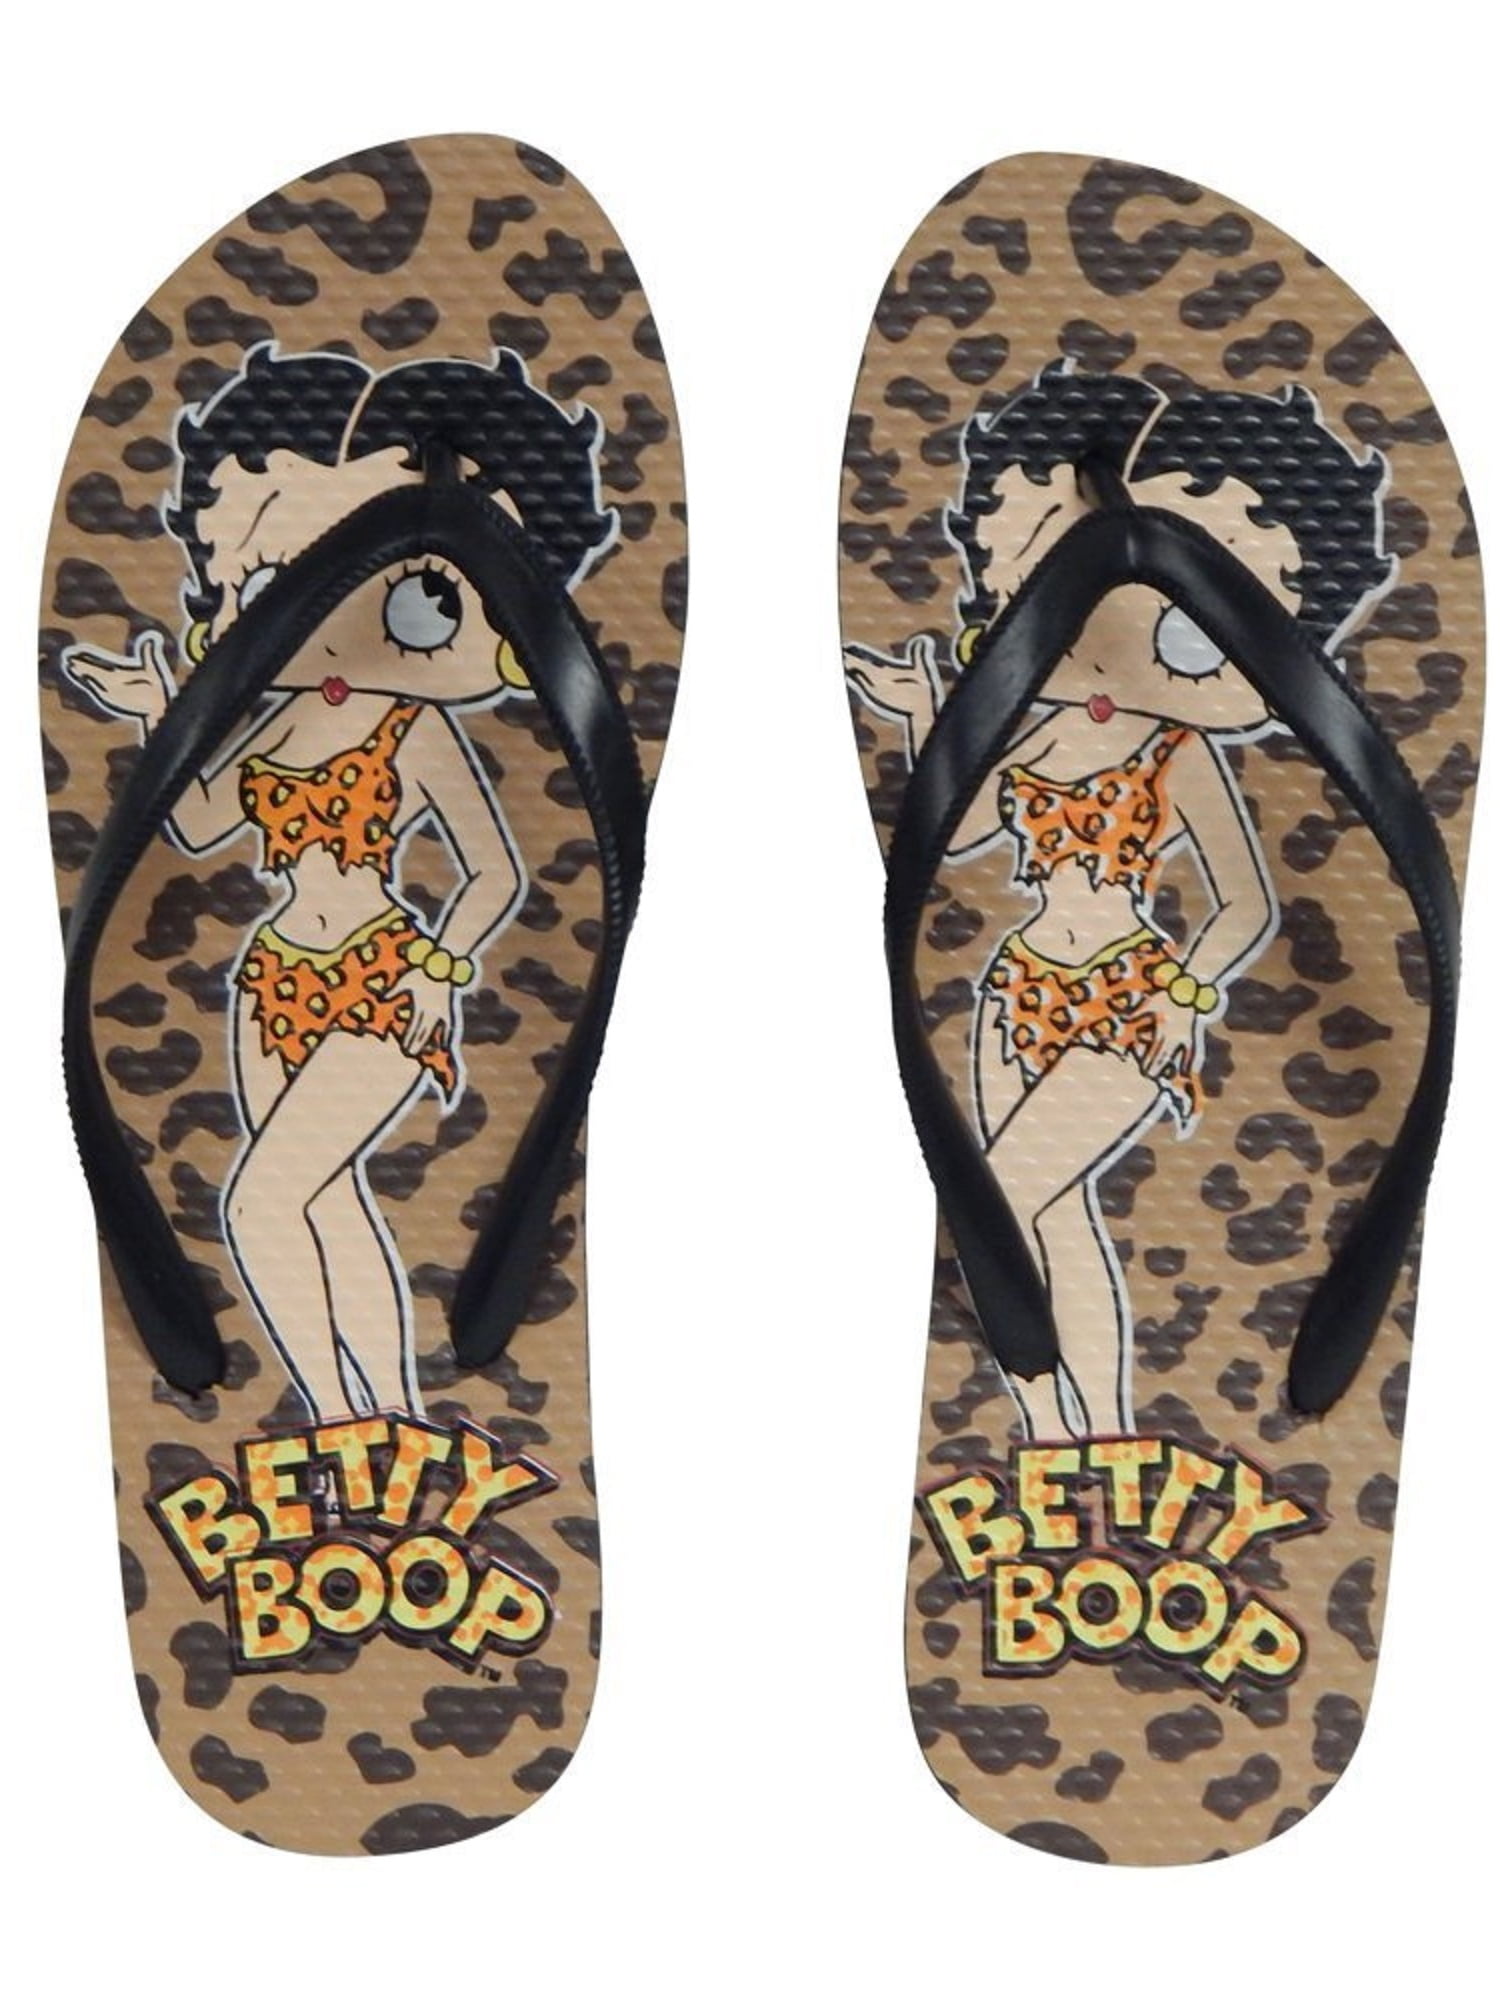  Betty  Boop  Betty  Boop  Womens Flip Flop Sandal  Thong 